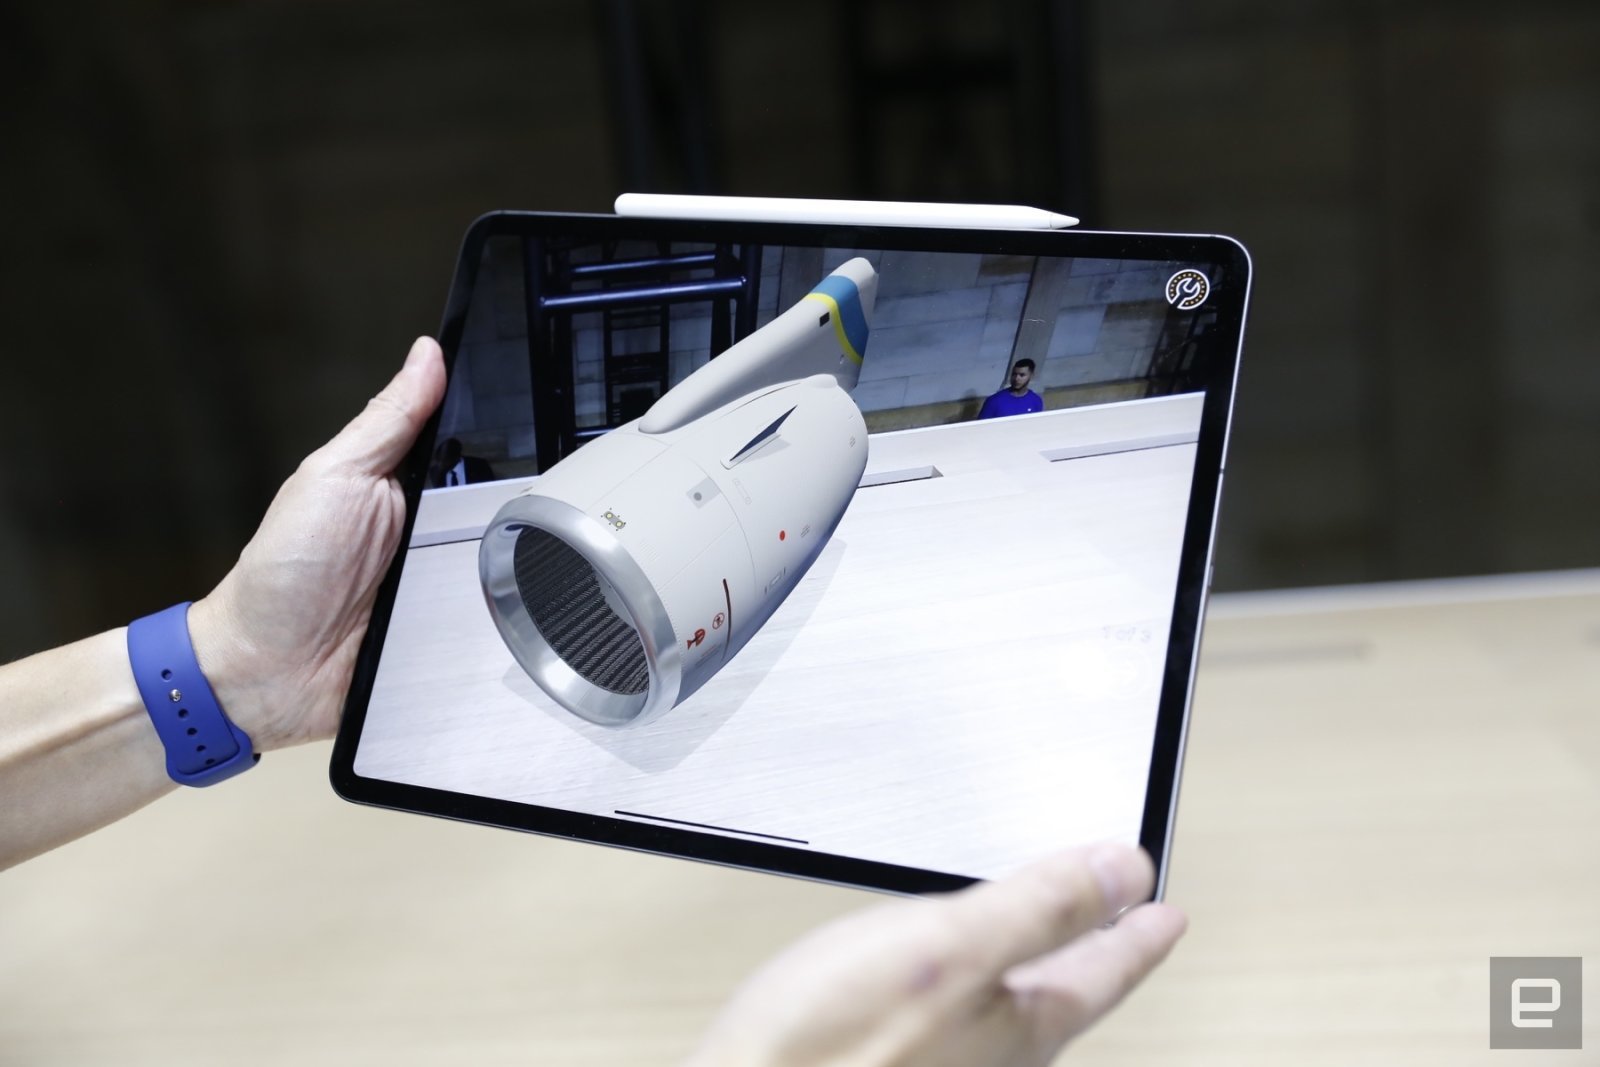 iPad Pro mới thế hệ tiếp theo có thể sẽ ra mắt vào đầu 2020, cảm biến 3D